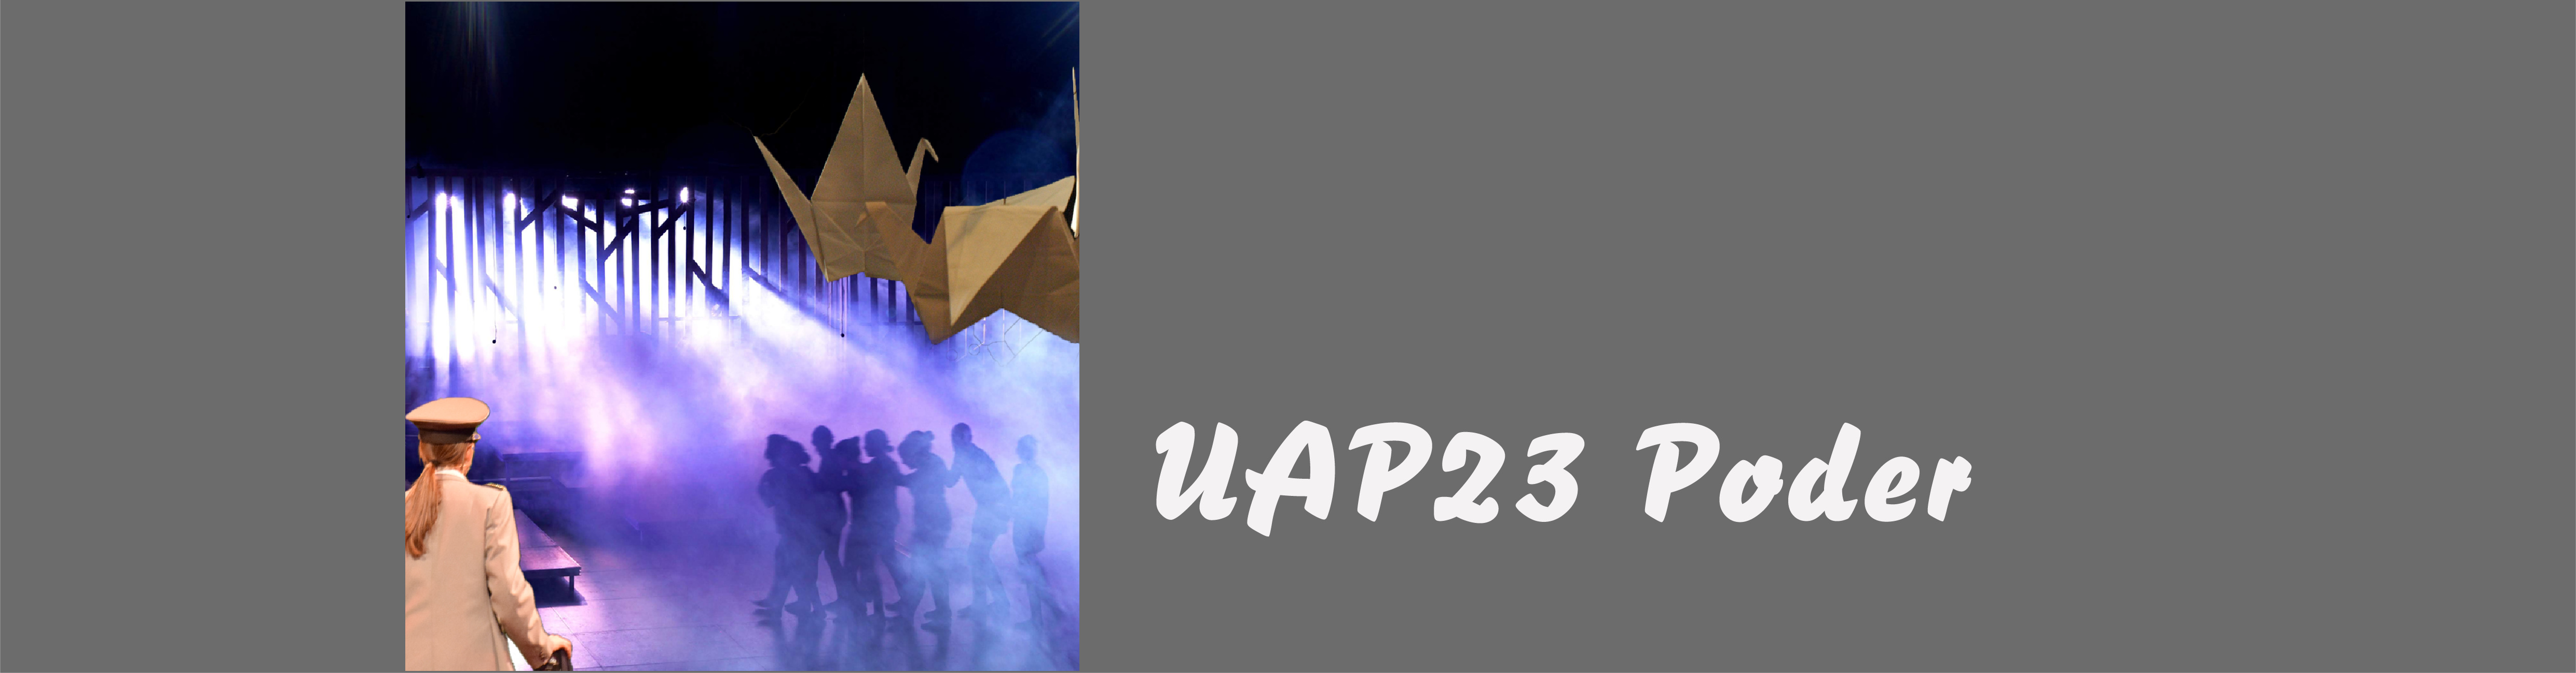 UAP23 Poder